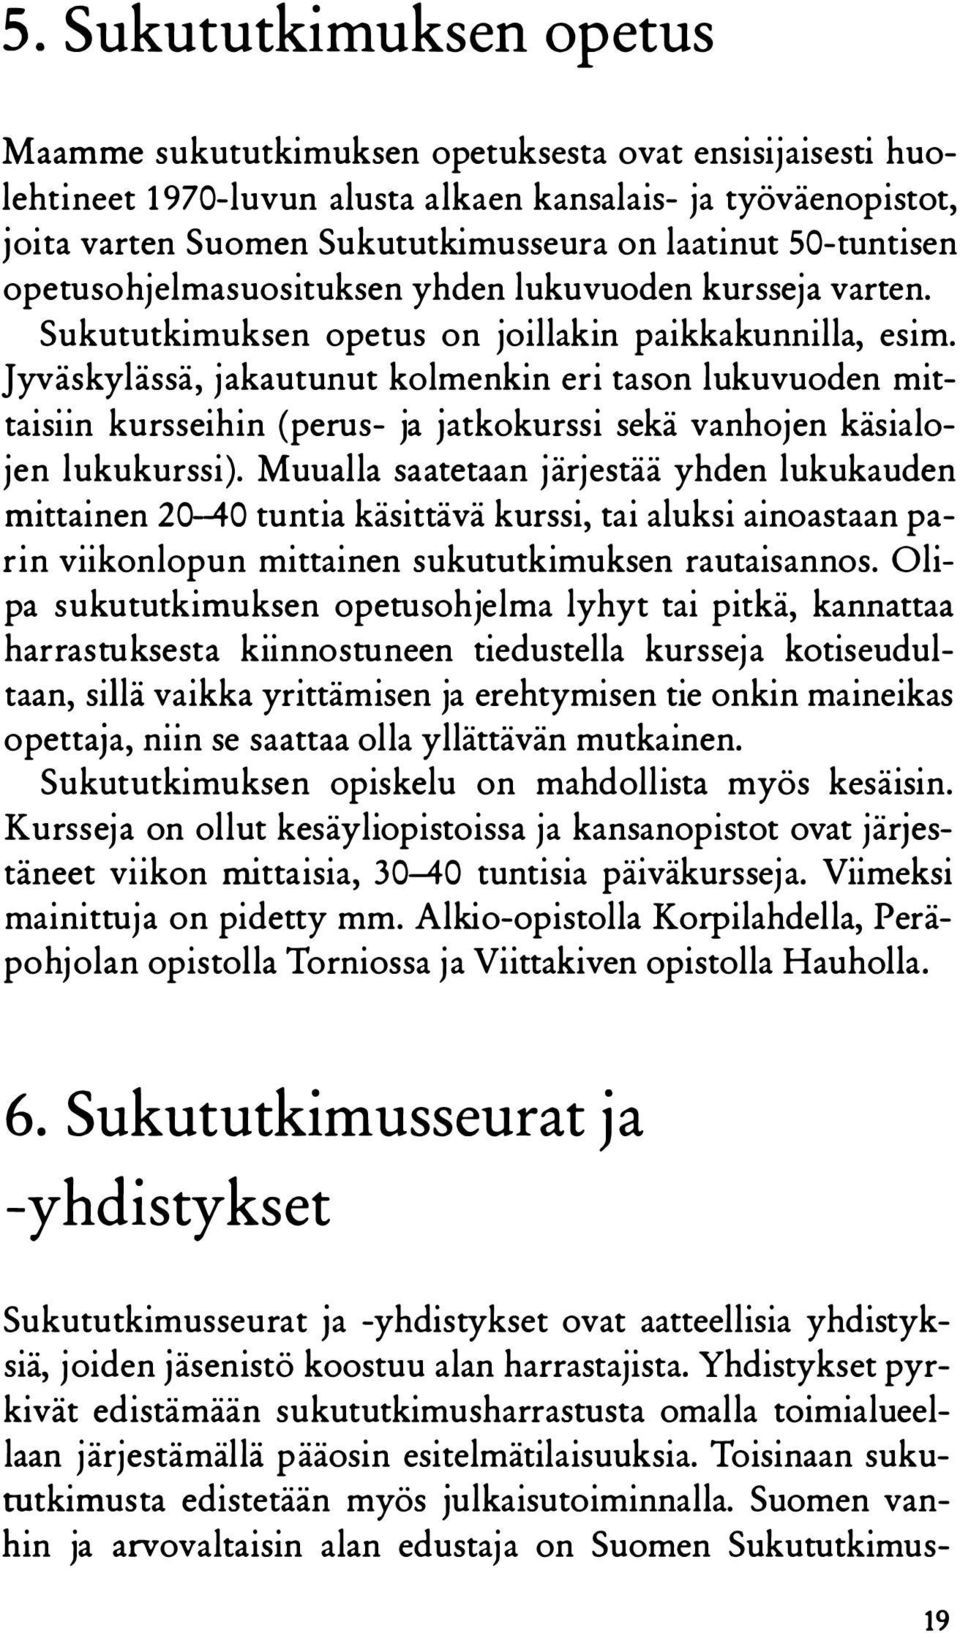 Jyväskylässä, jakautunut kolmenkin eri tason lukuvuoden mittaisiin kursseihin (perus- ja jatkokurssi sekä vanhojen käsialojen lukukurssi).